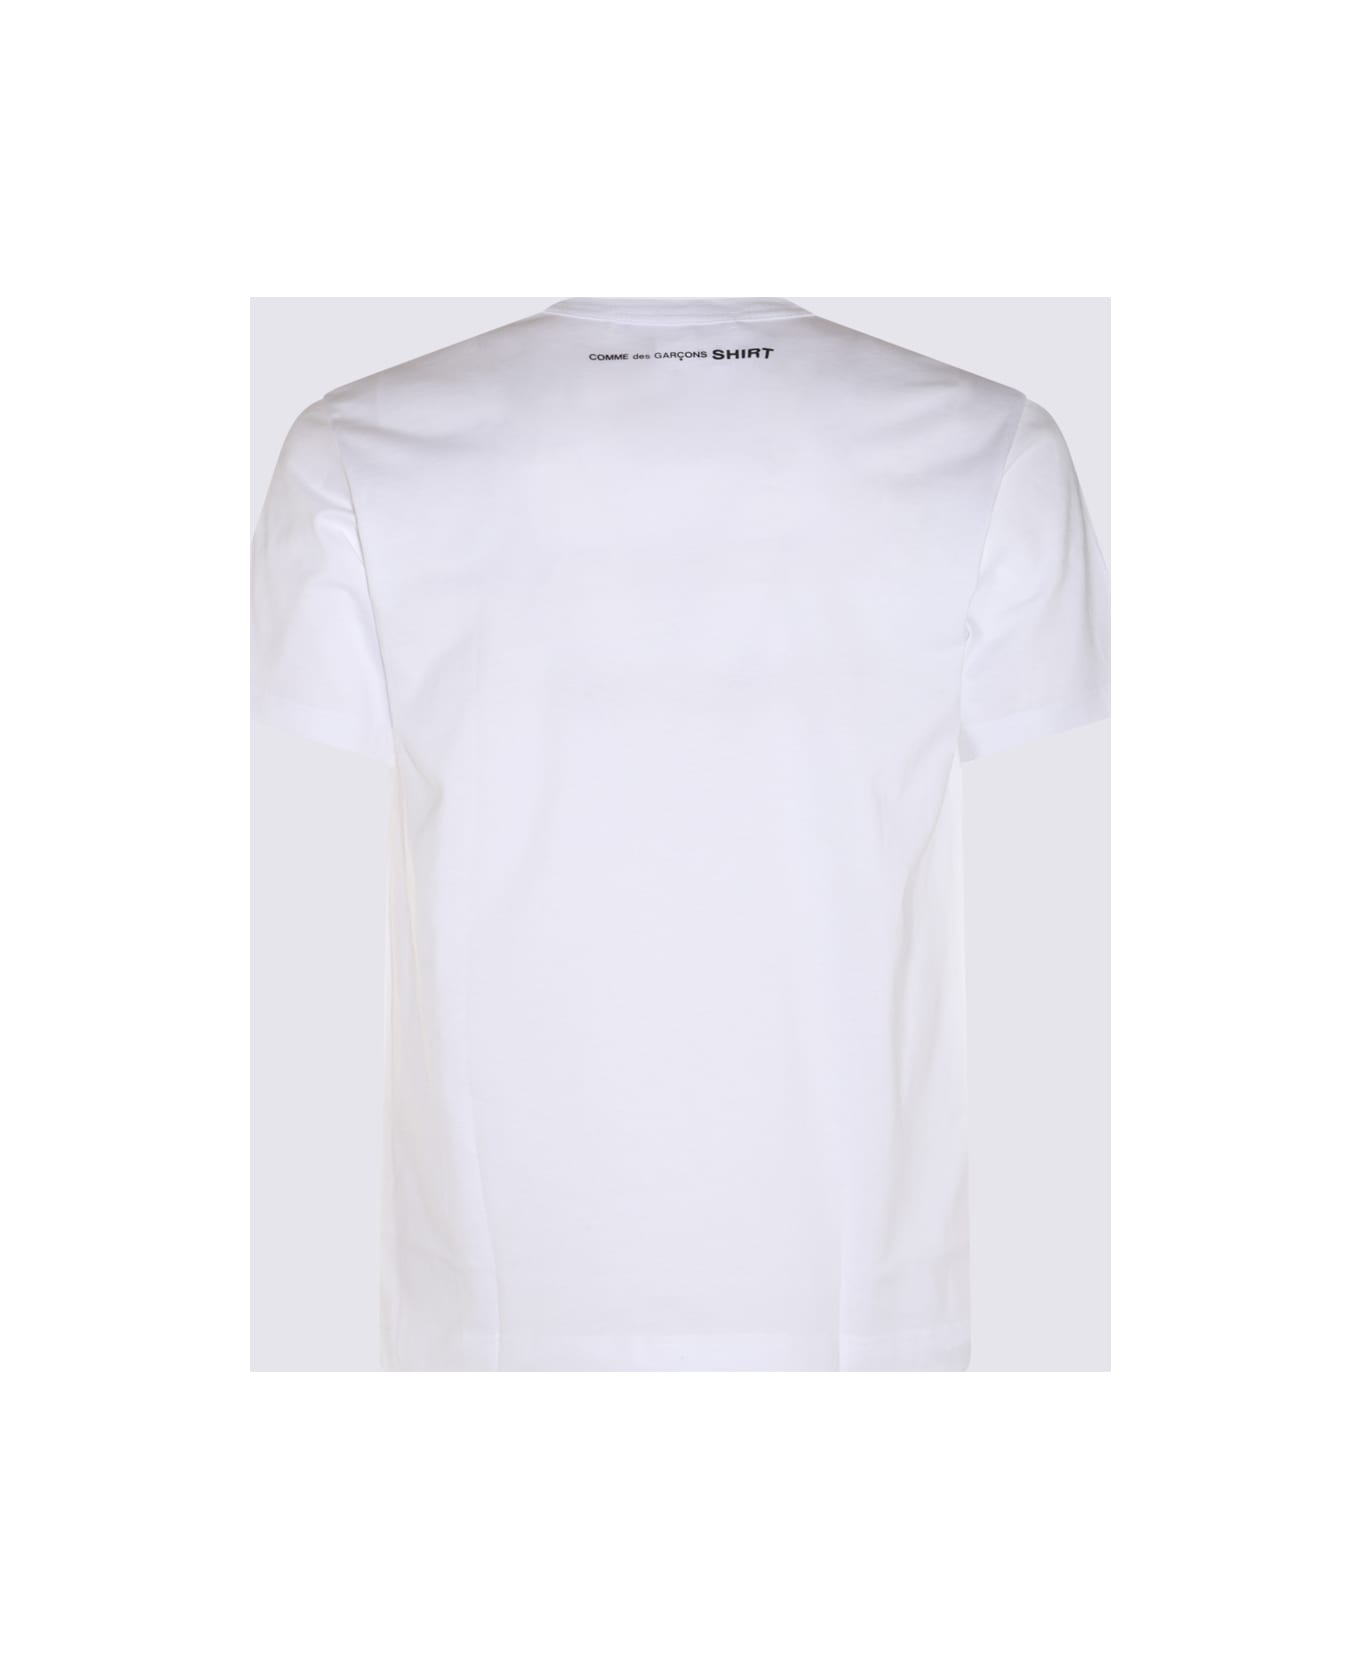 Comme des Garçons White Cotton T-shirt - White